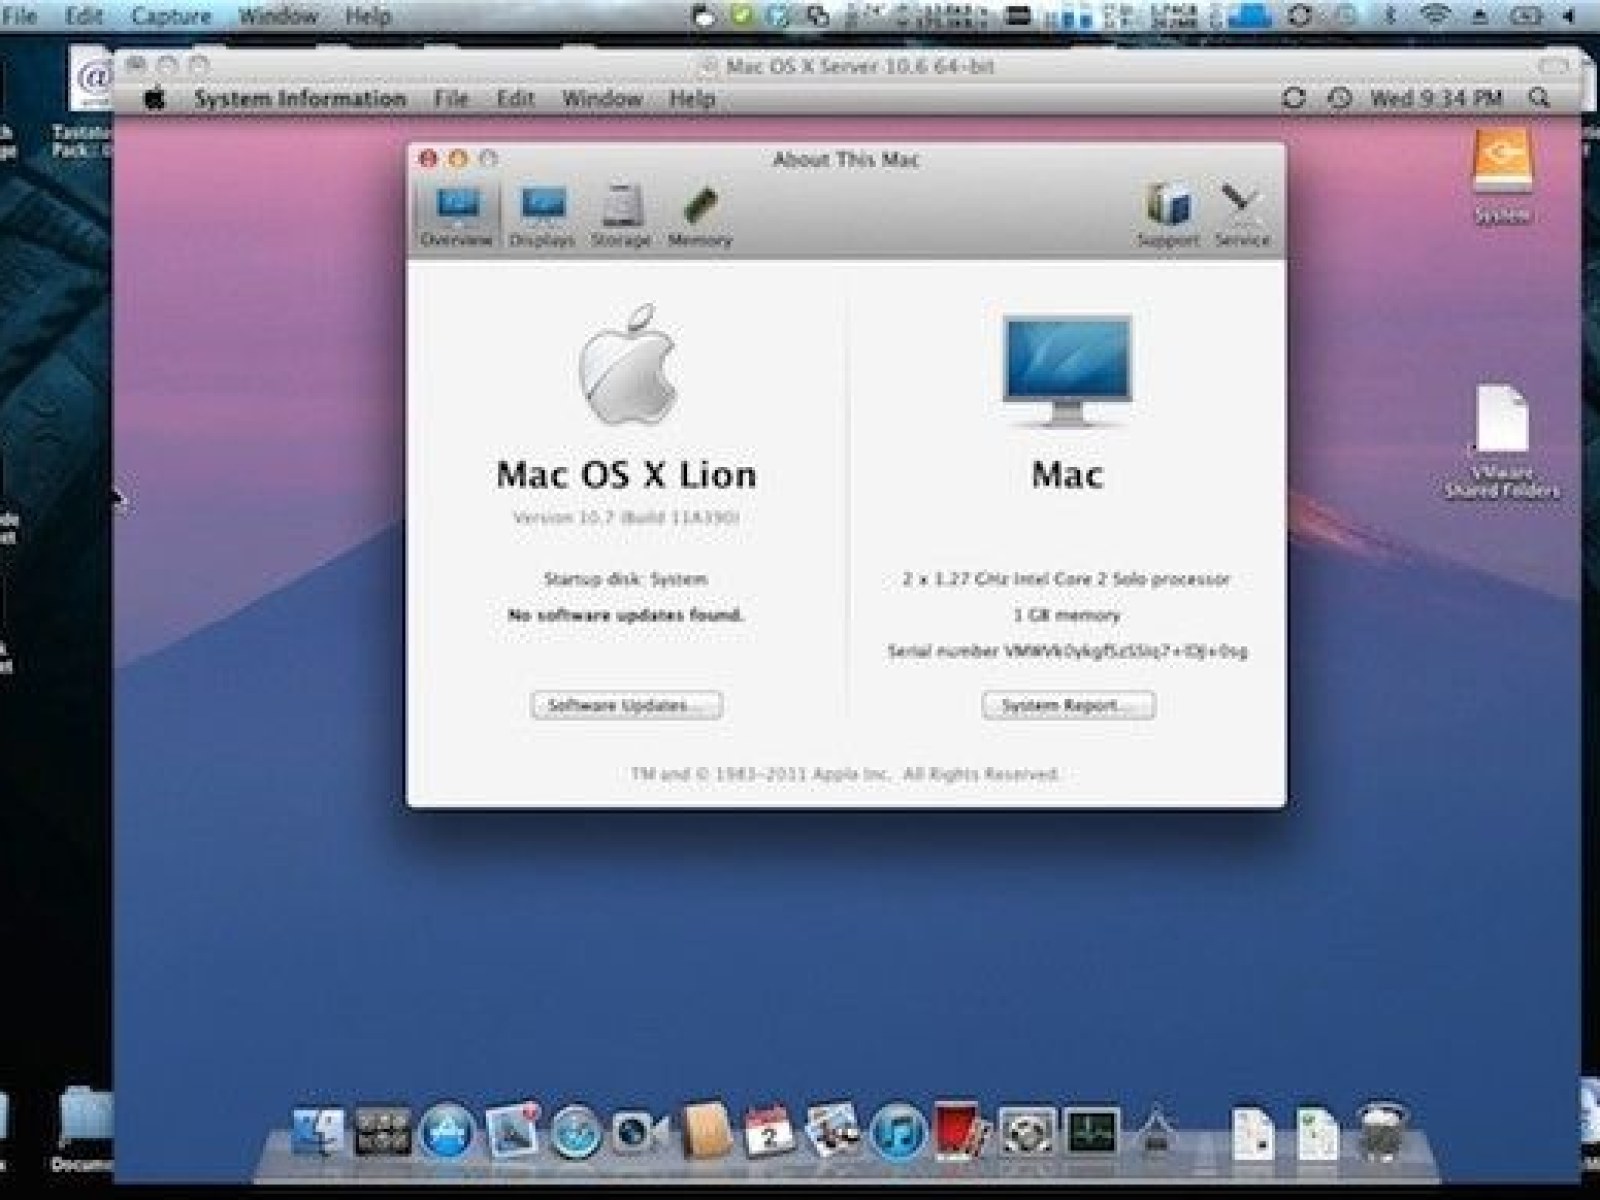 Os x 10.7 Lion. Mac os 10.7. Mac os x 10.7 Lion. Mac os x 10.7 4. Macos support